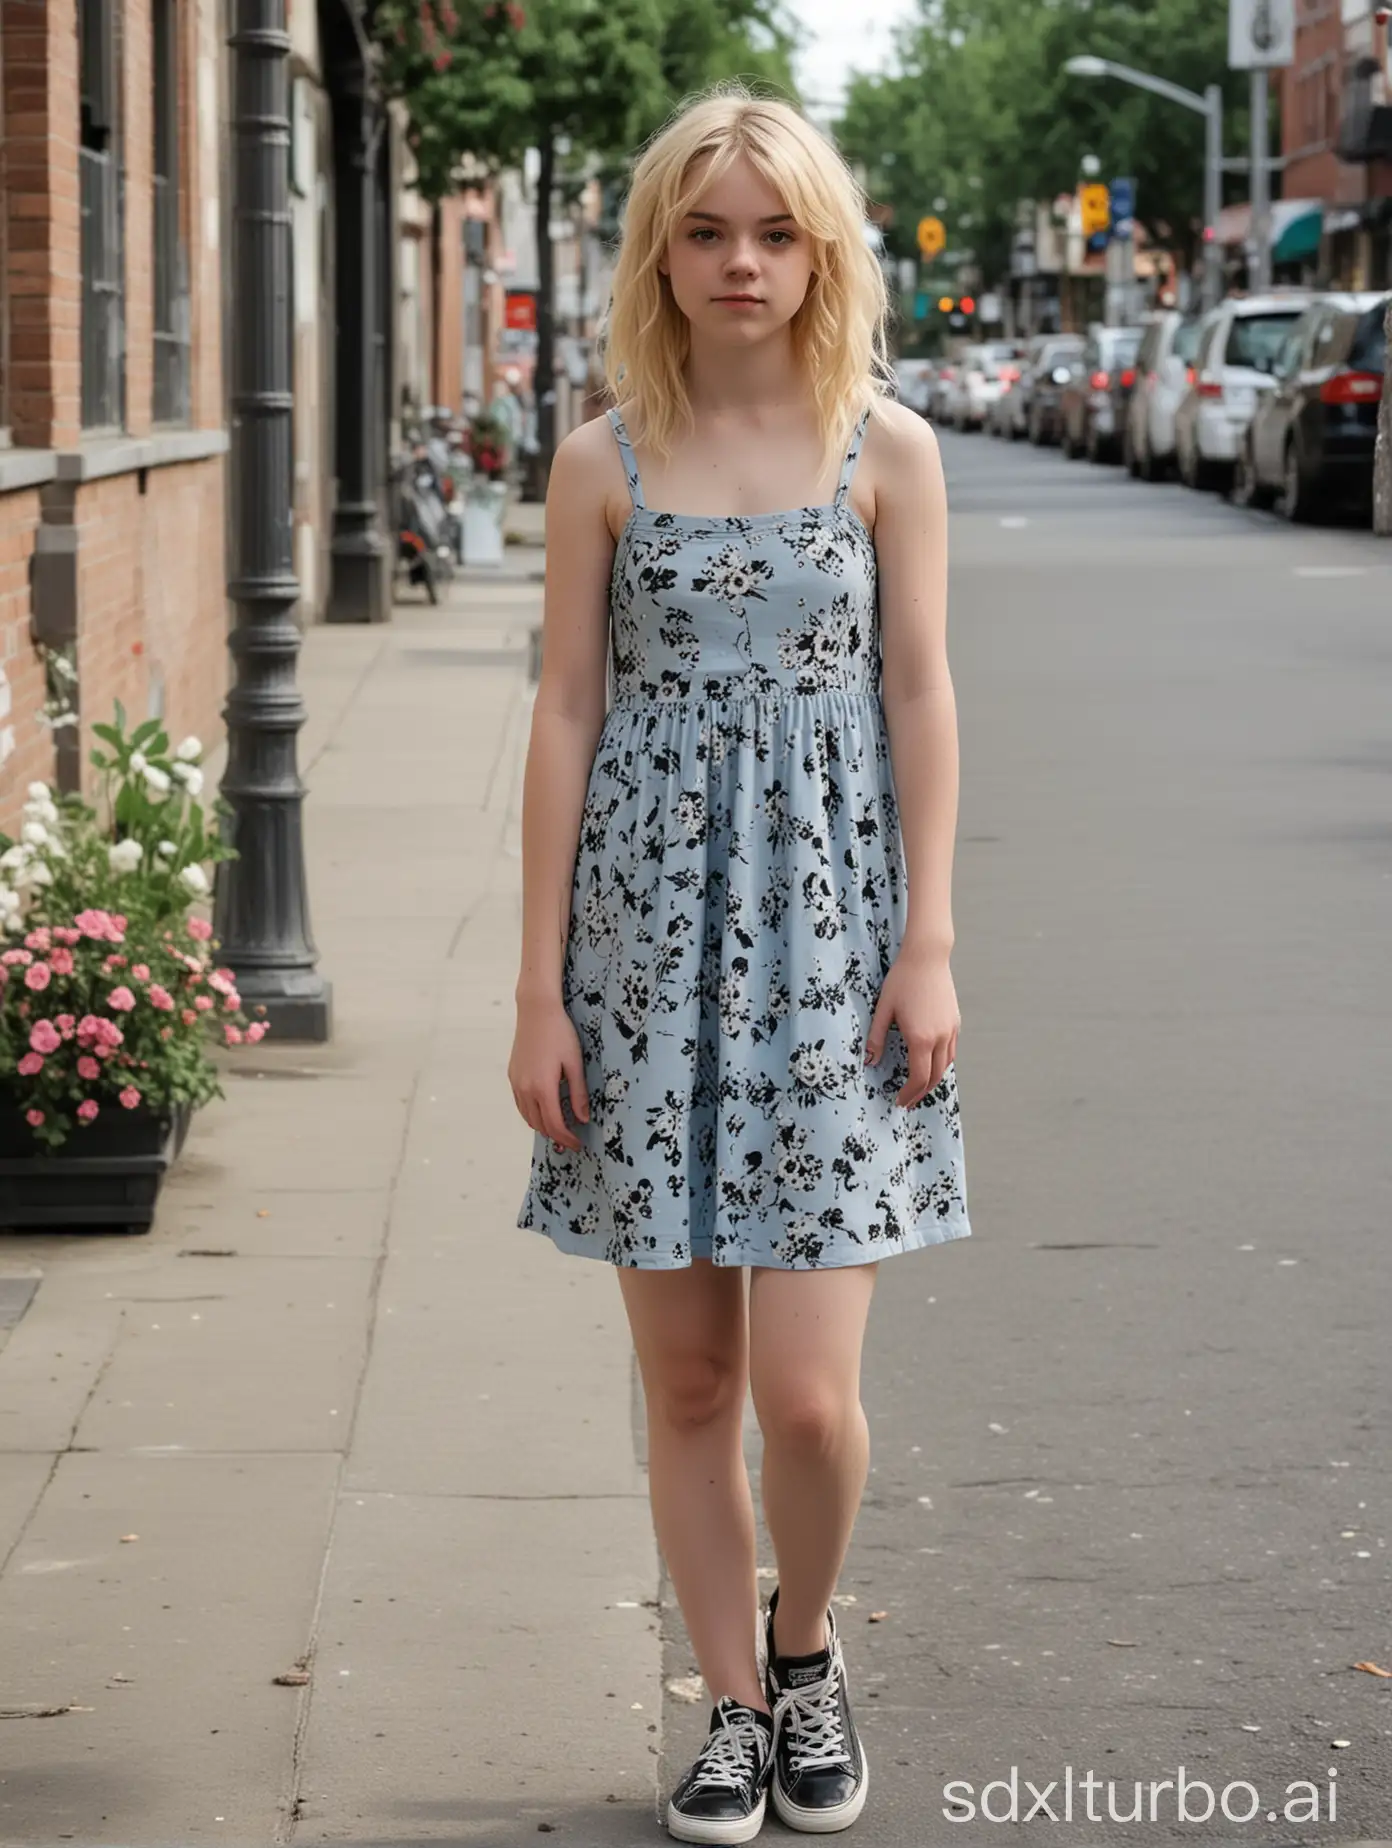 teen femboy, blonde, flower patterned light-blue spaghetti-strap dress, black/white canvas sneakers, smirk, walking on busy sidewalk, midday